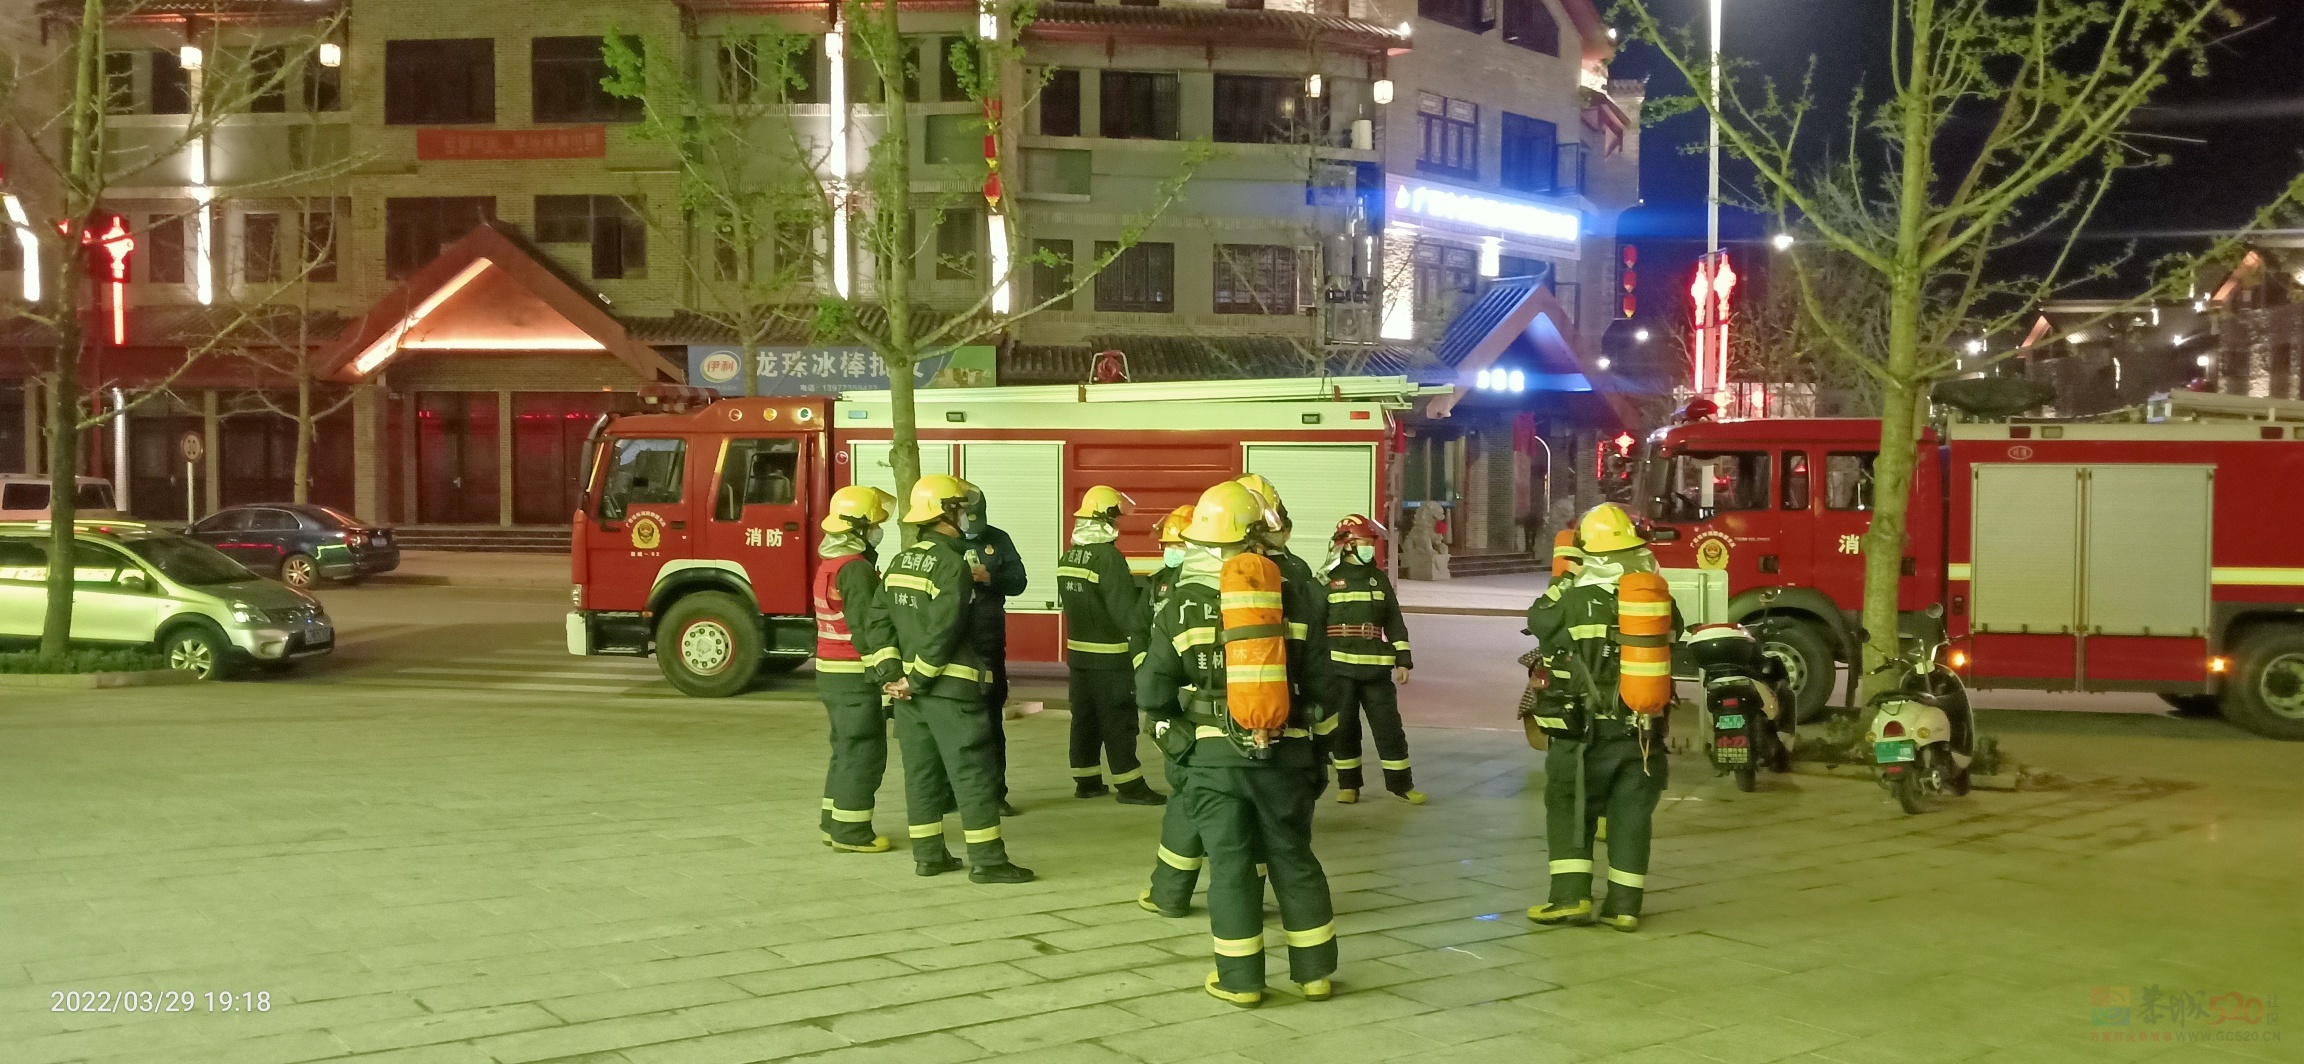 昨晚偶遇消防人员在油茶小镇的六福超市演练消防483 / 作者:陈爱国 / 帖子ID:294073